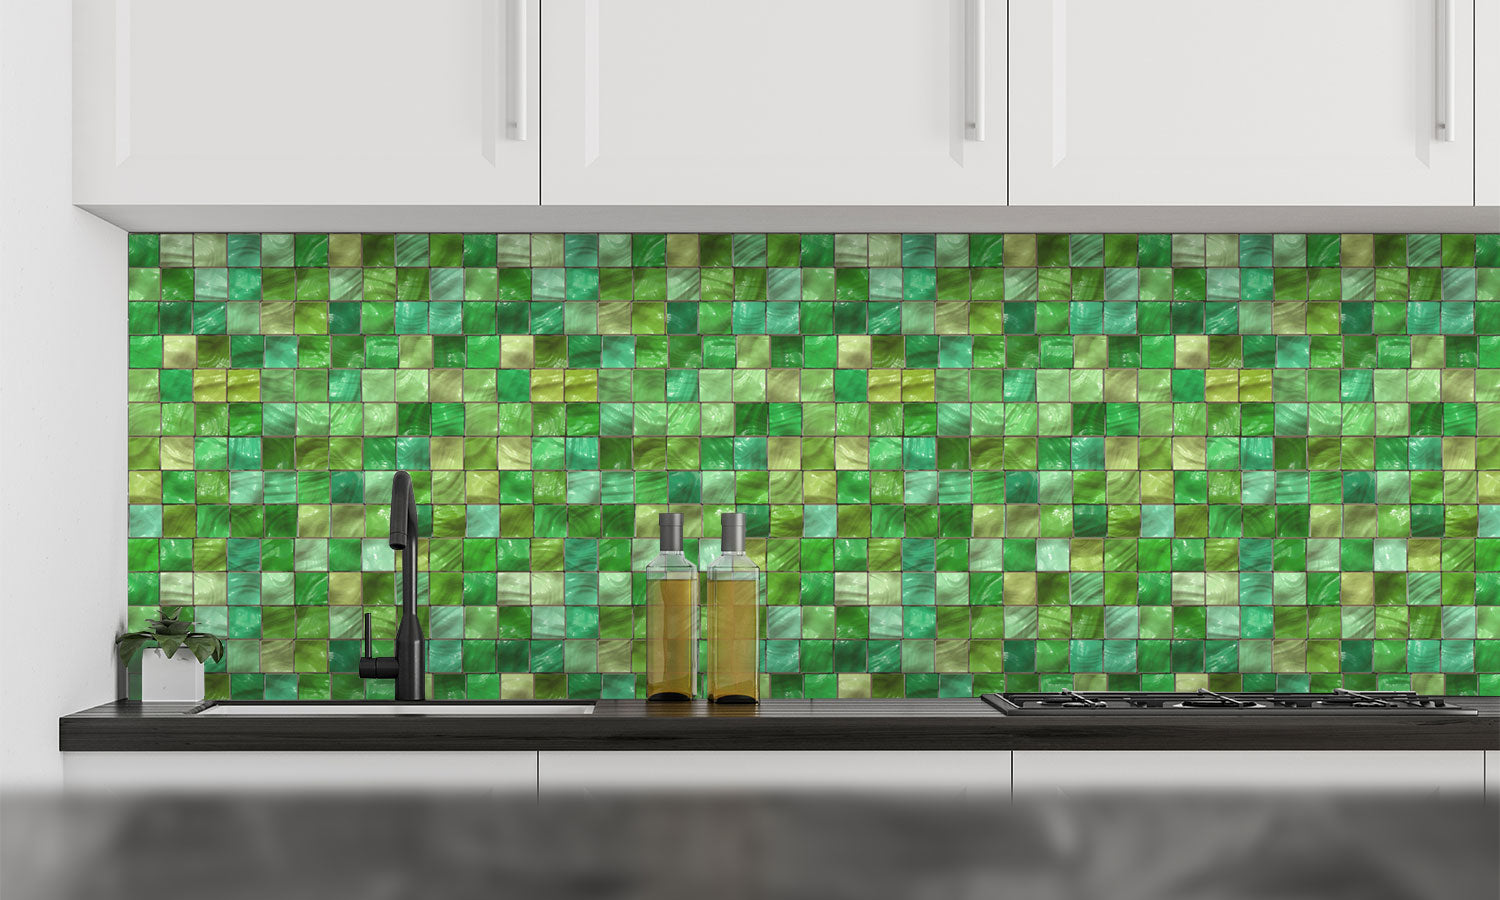 Kuhinjski paneli  Green Ceramic tiles - Stekleni / PVC plošče / Pleksi steklo - s tiskom za kuhinjo, Stenske obloge PKU0103 - Life-decor.si